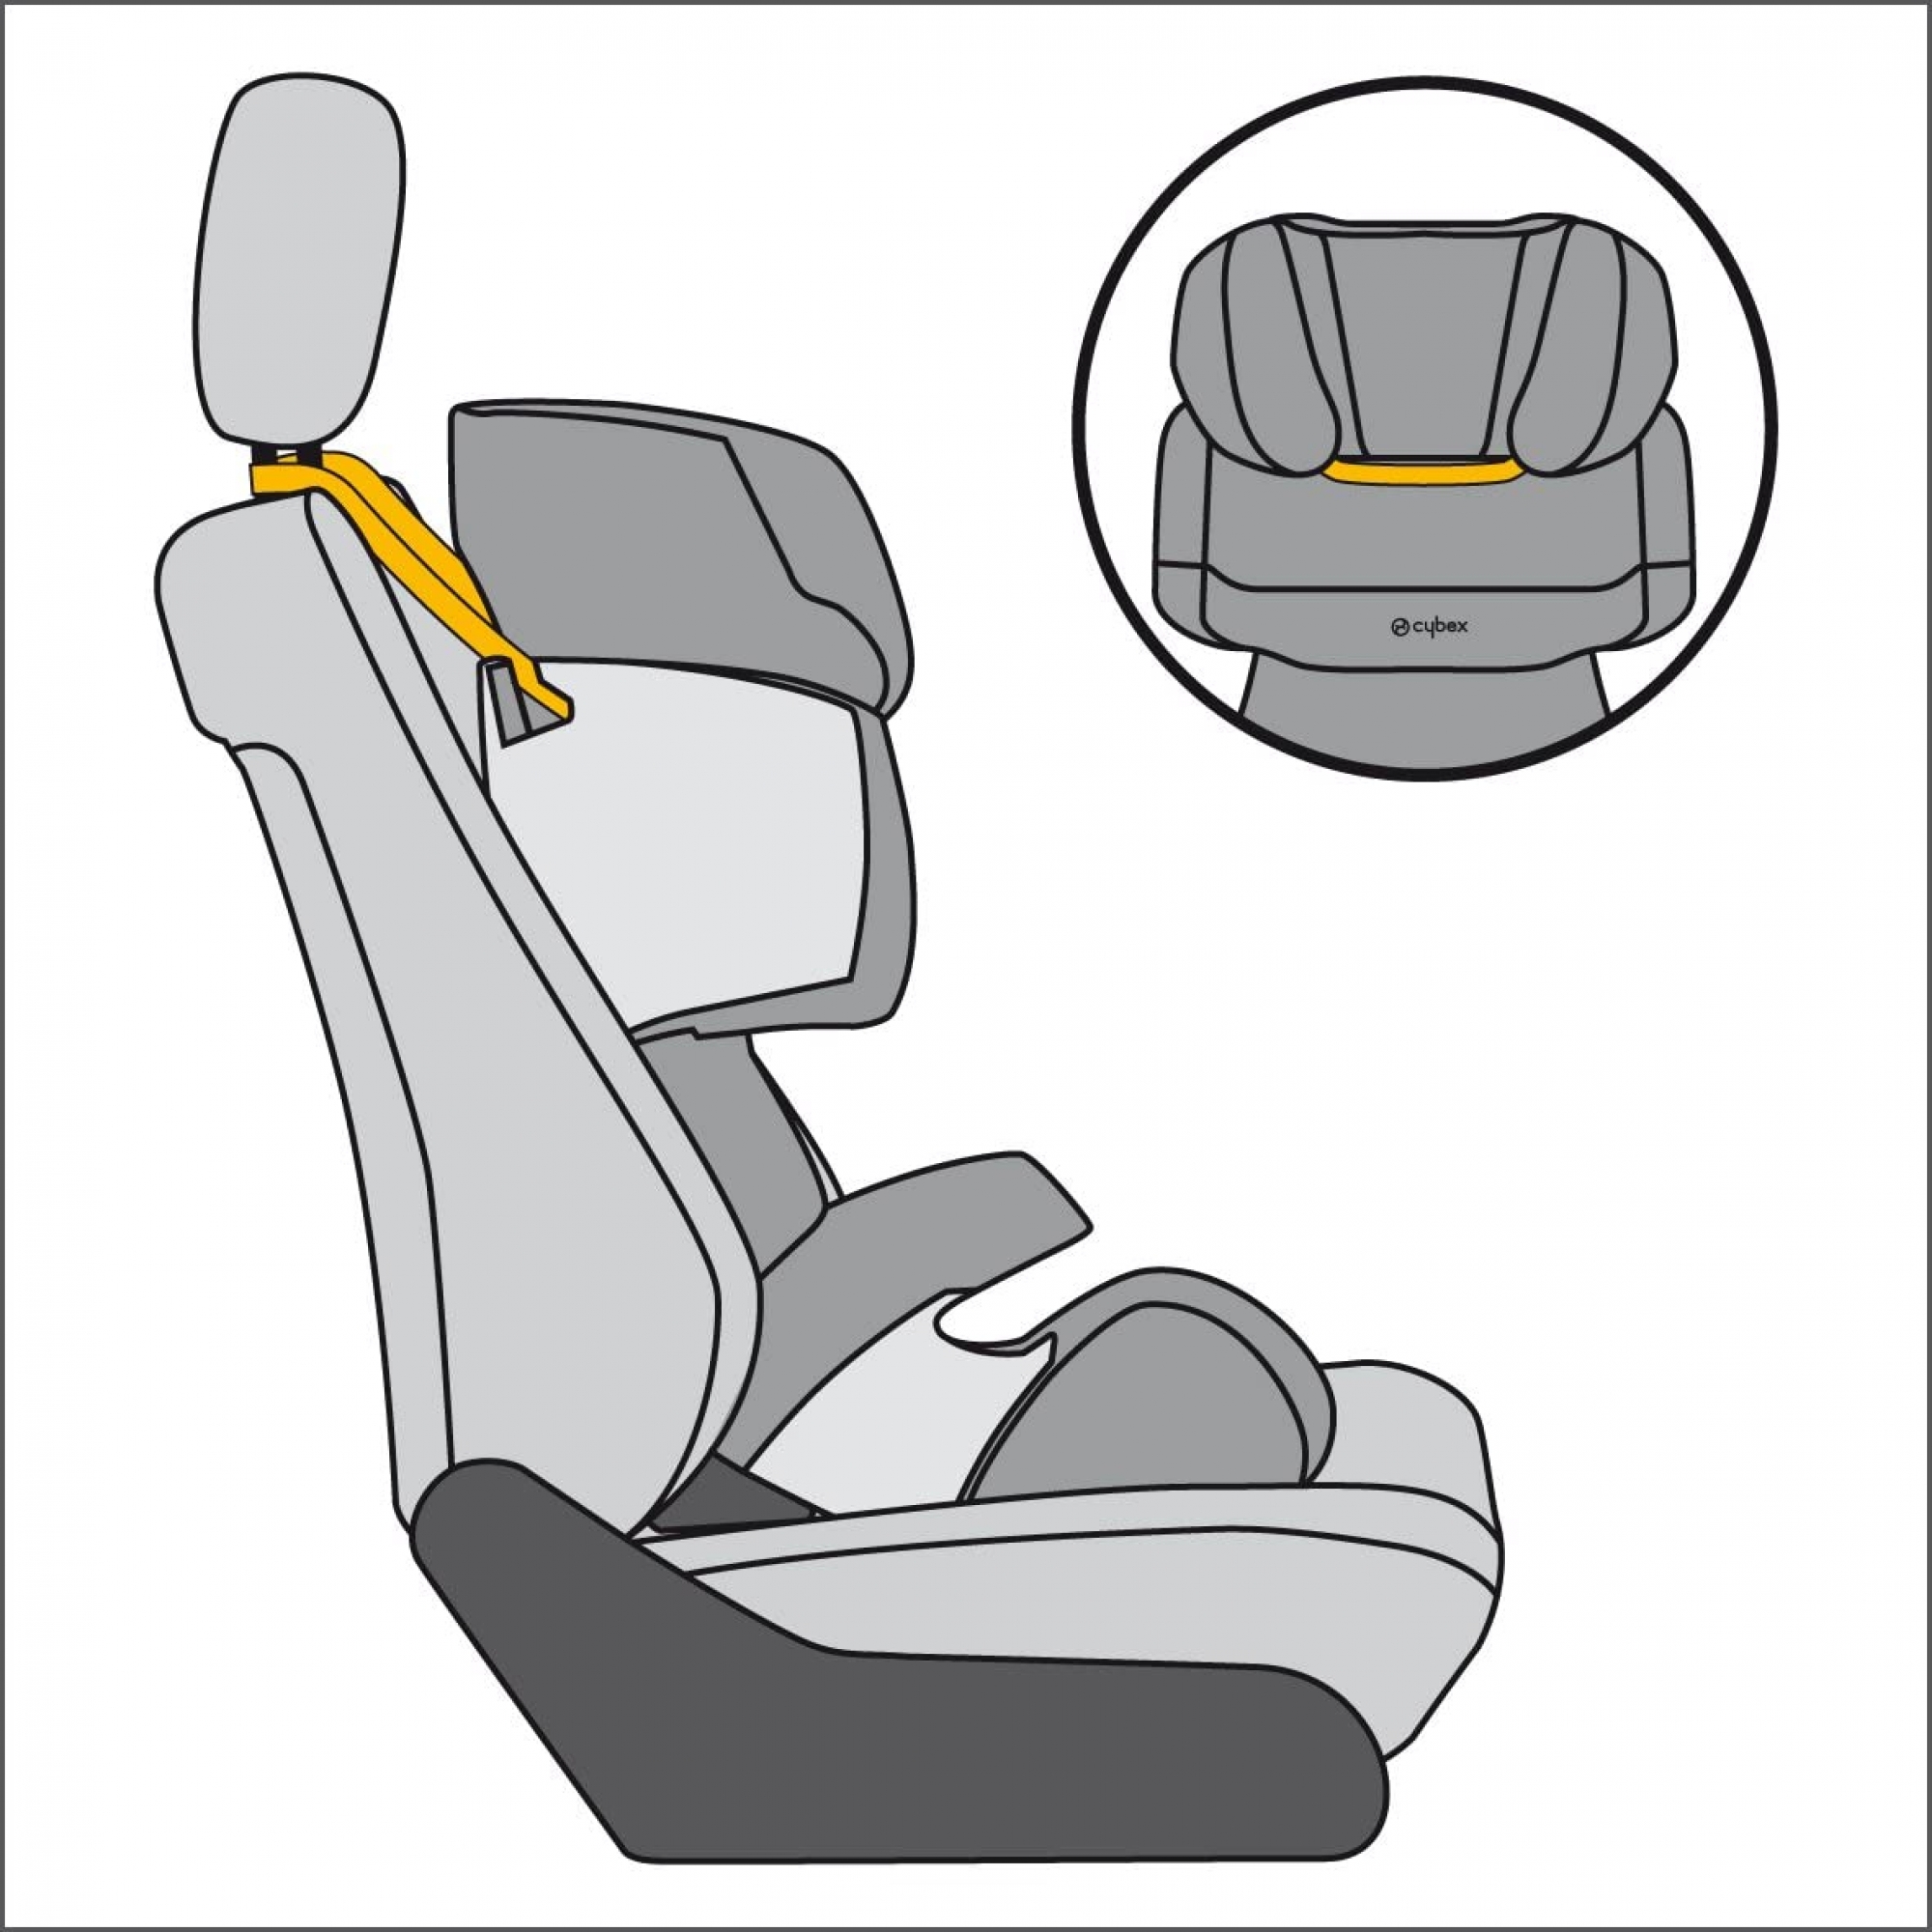 Ремень безопасности передних сидений. Пристегиваем детское кресло Cybex. Детское кресло Cybex крепления. Крепление ремней автокресло Cybex. Cybex Silver автокресло крепление.